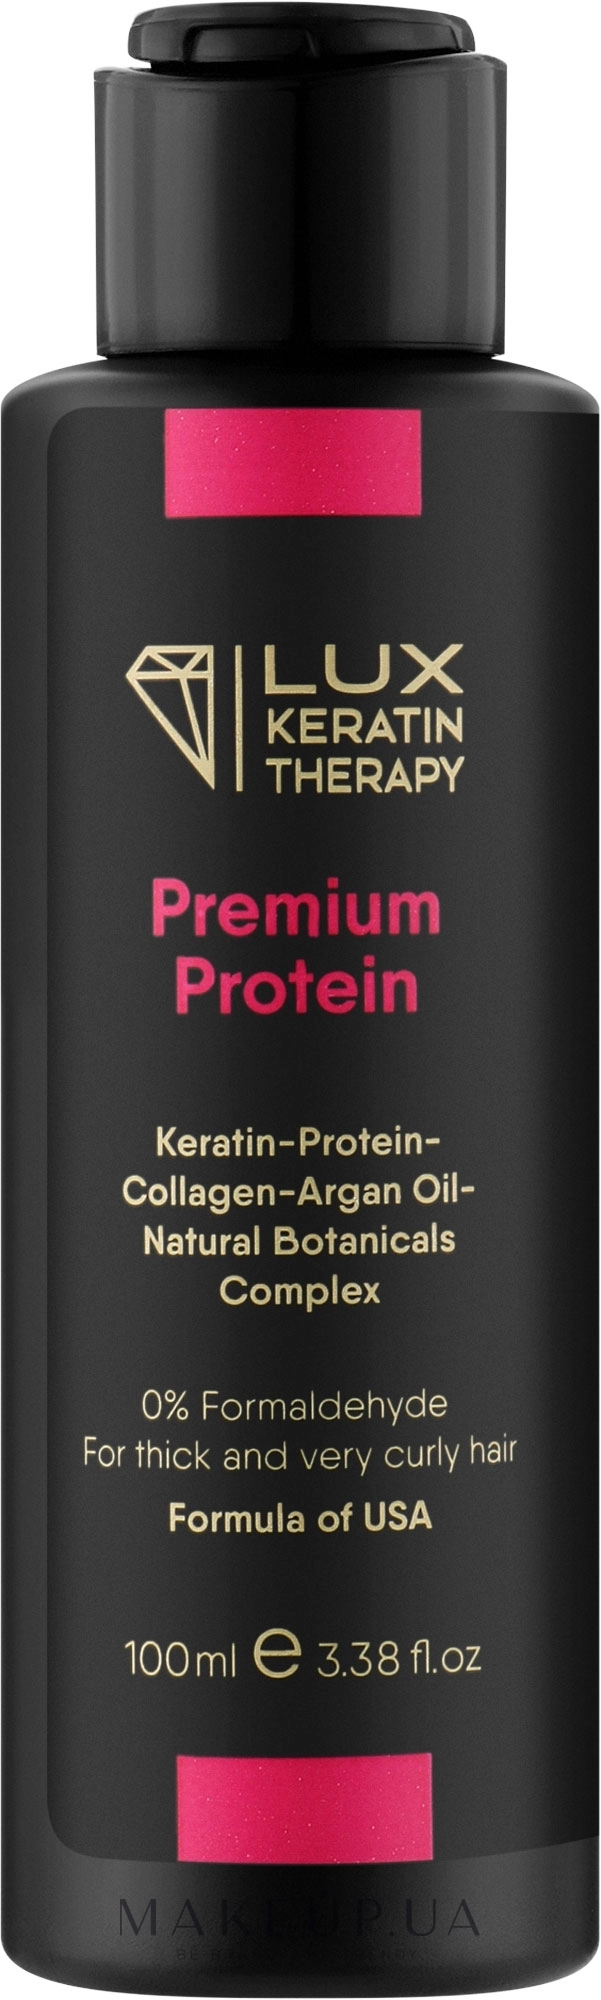 Засіб для випрямлення волосся - Lux Keratin Therapy Premium Protein, 100 мл - фото N1